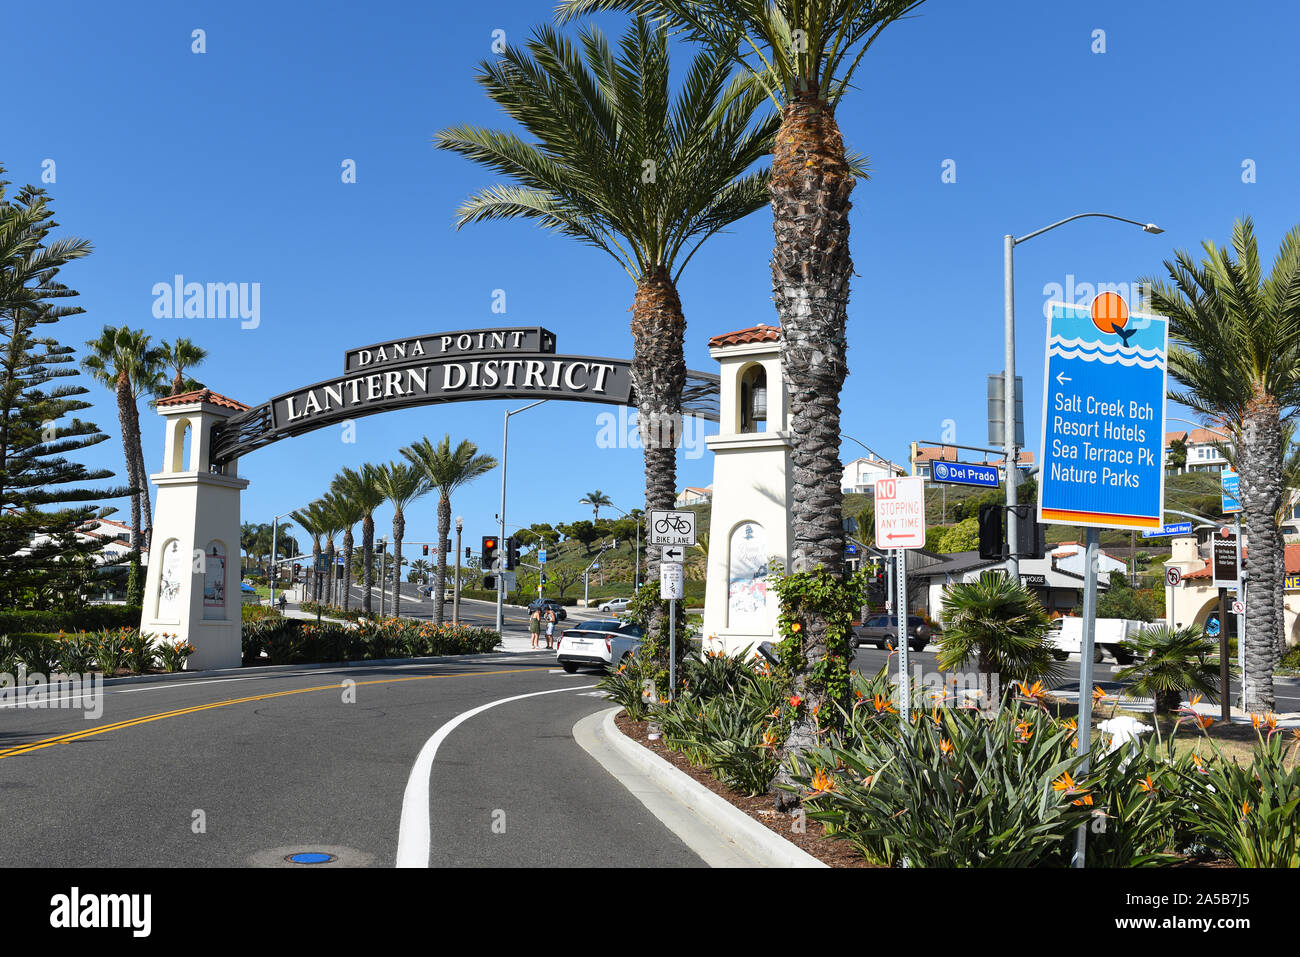 DANA POINT, CALIFORNIE - 18 OCT 2019 : La Lanterne signe District signale une zone de revitalisation en cours dans la ville de plage de la Californie du Sud. Banque D'Images